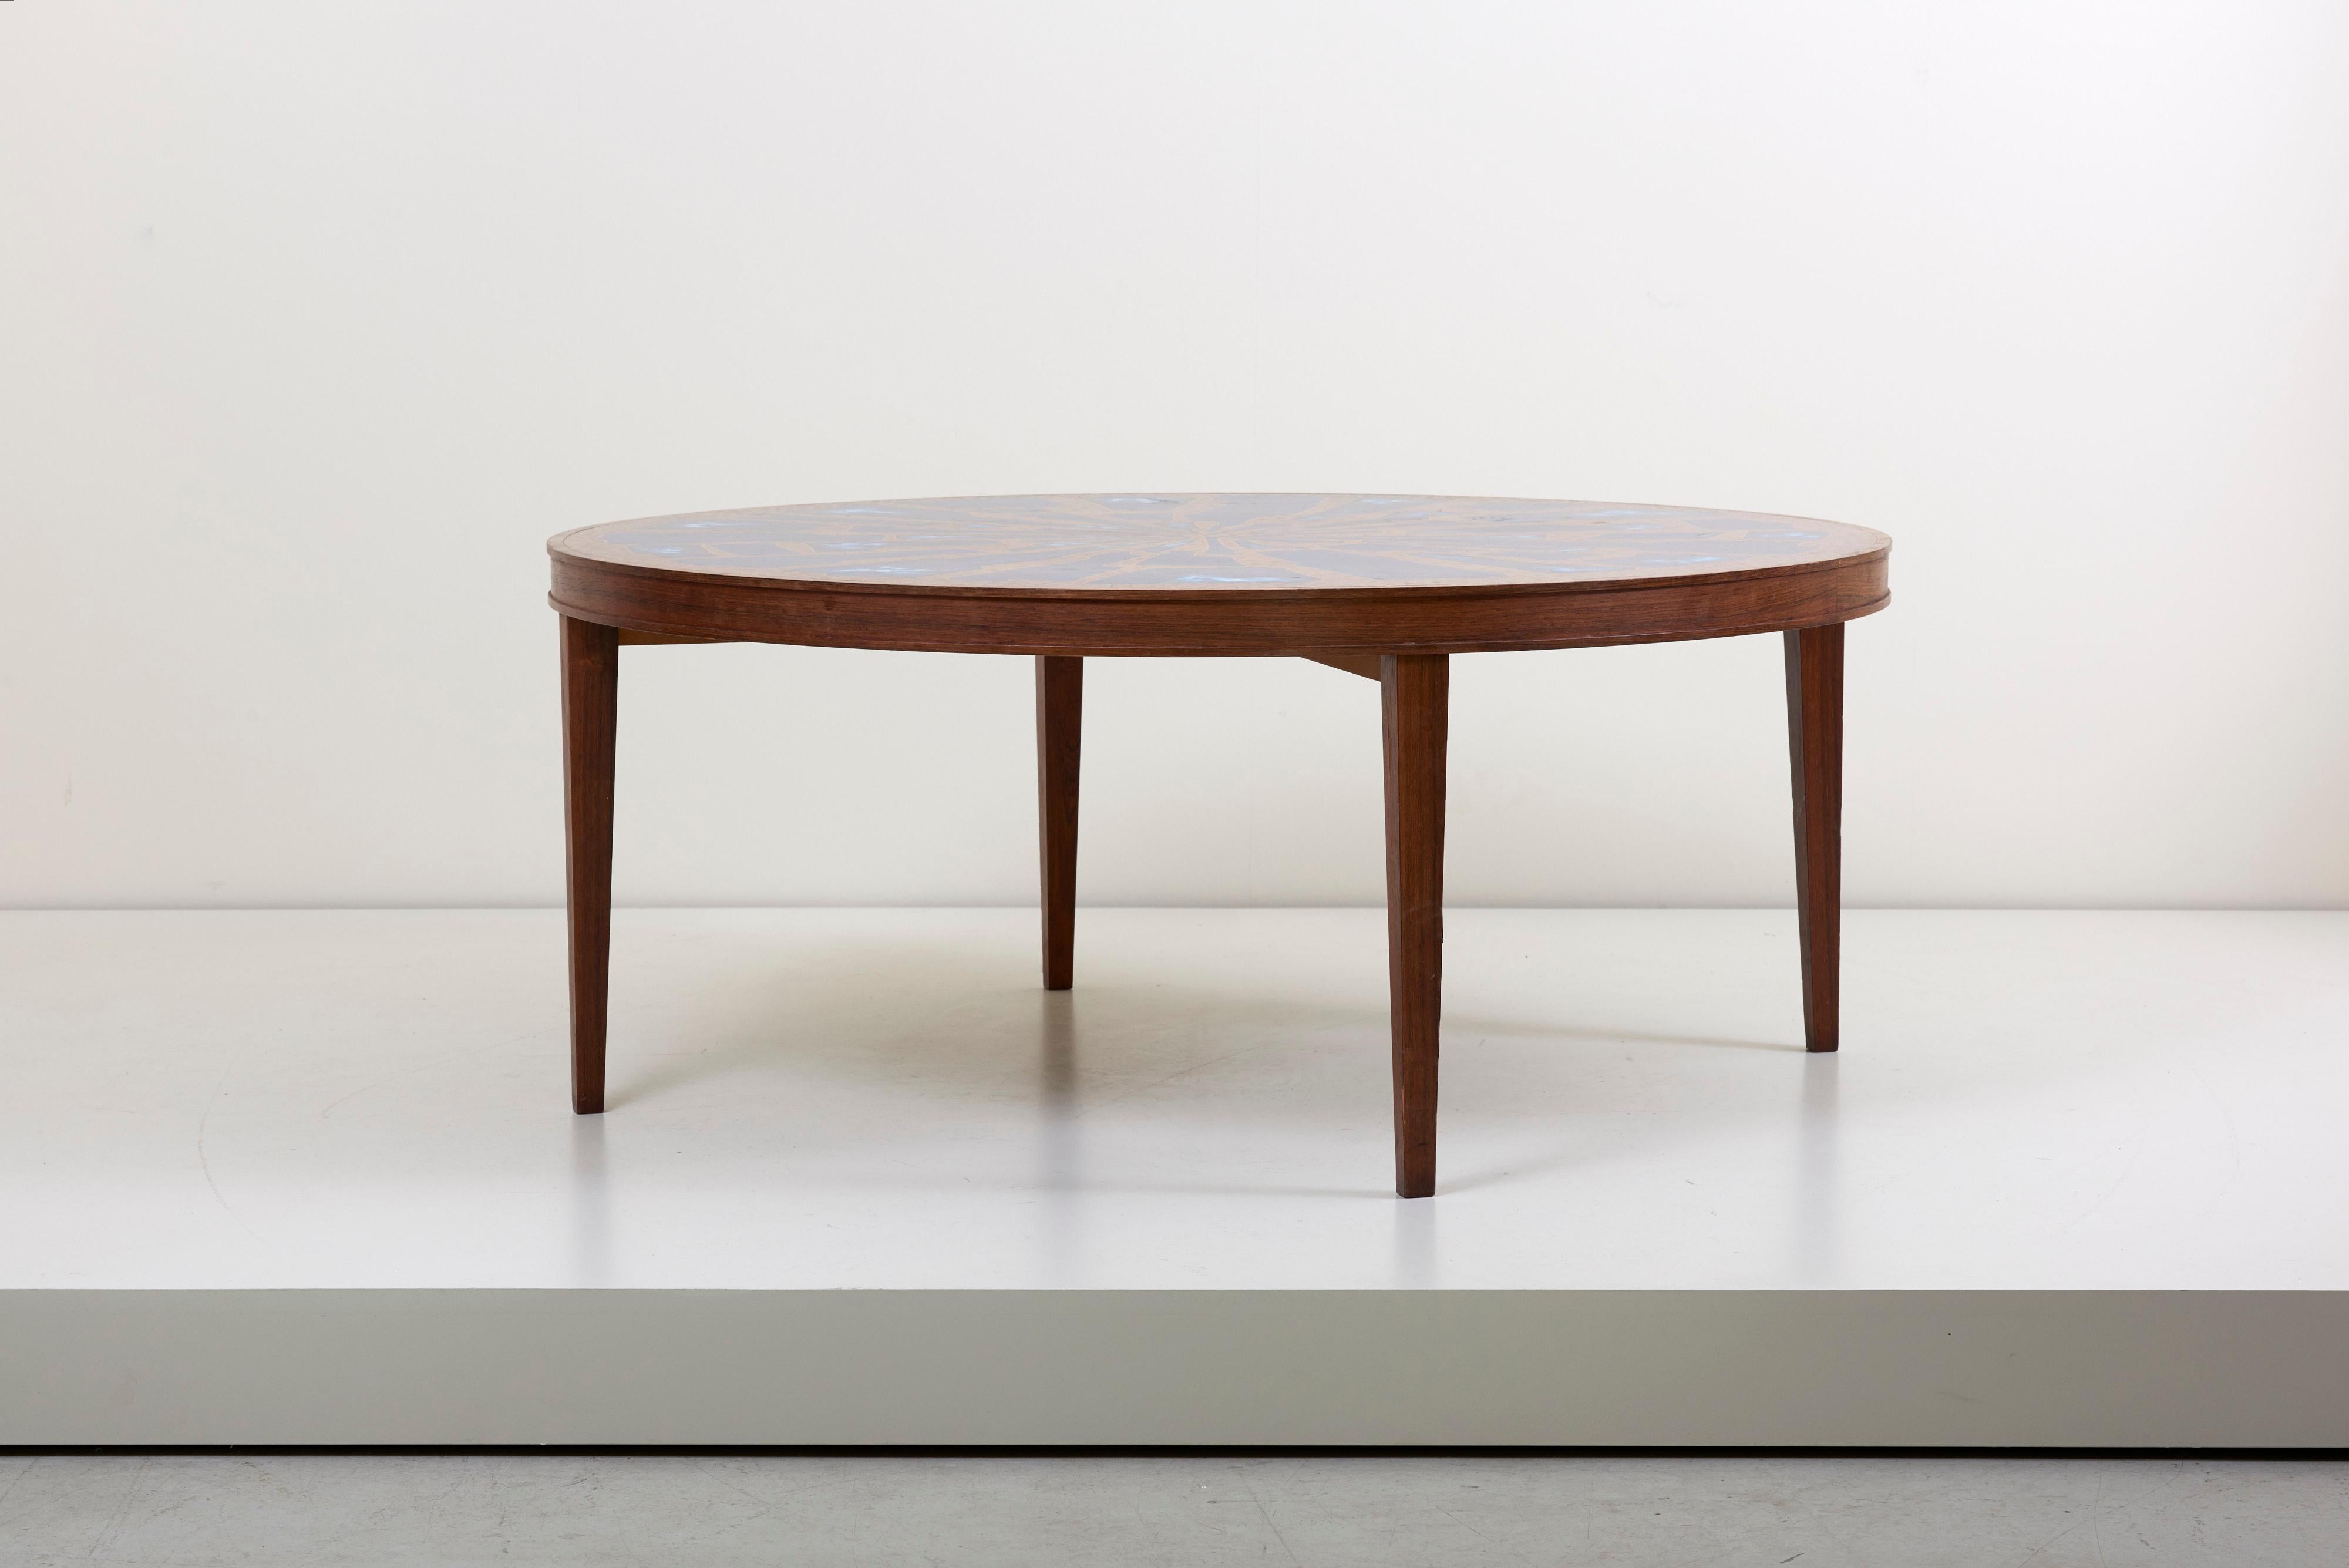 Table basse en bois ultra rare avec un superbe plateau en cuivre et émail. La table basse a une taille impressionnante et est fabriquée en très haute qualité.